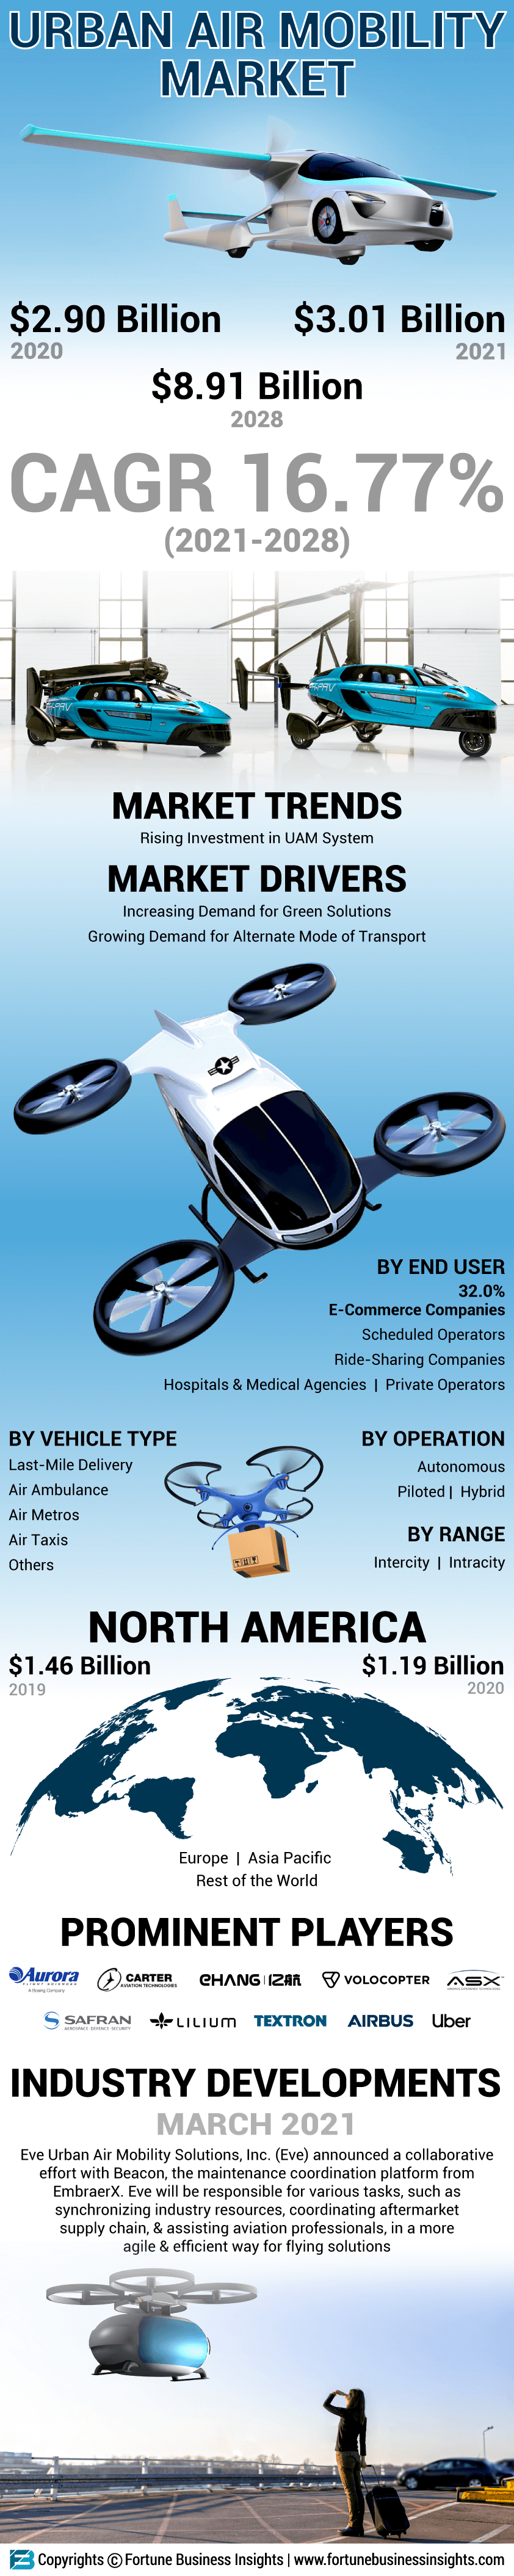 Urban Air Mobility (UAM) Market